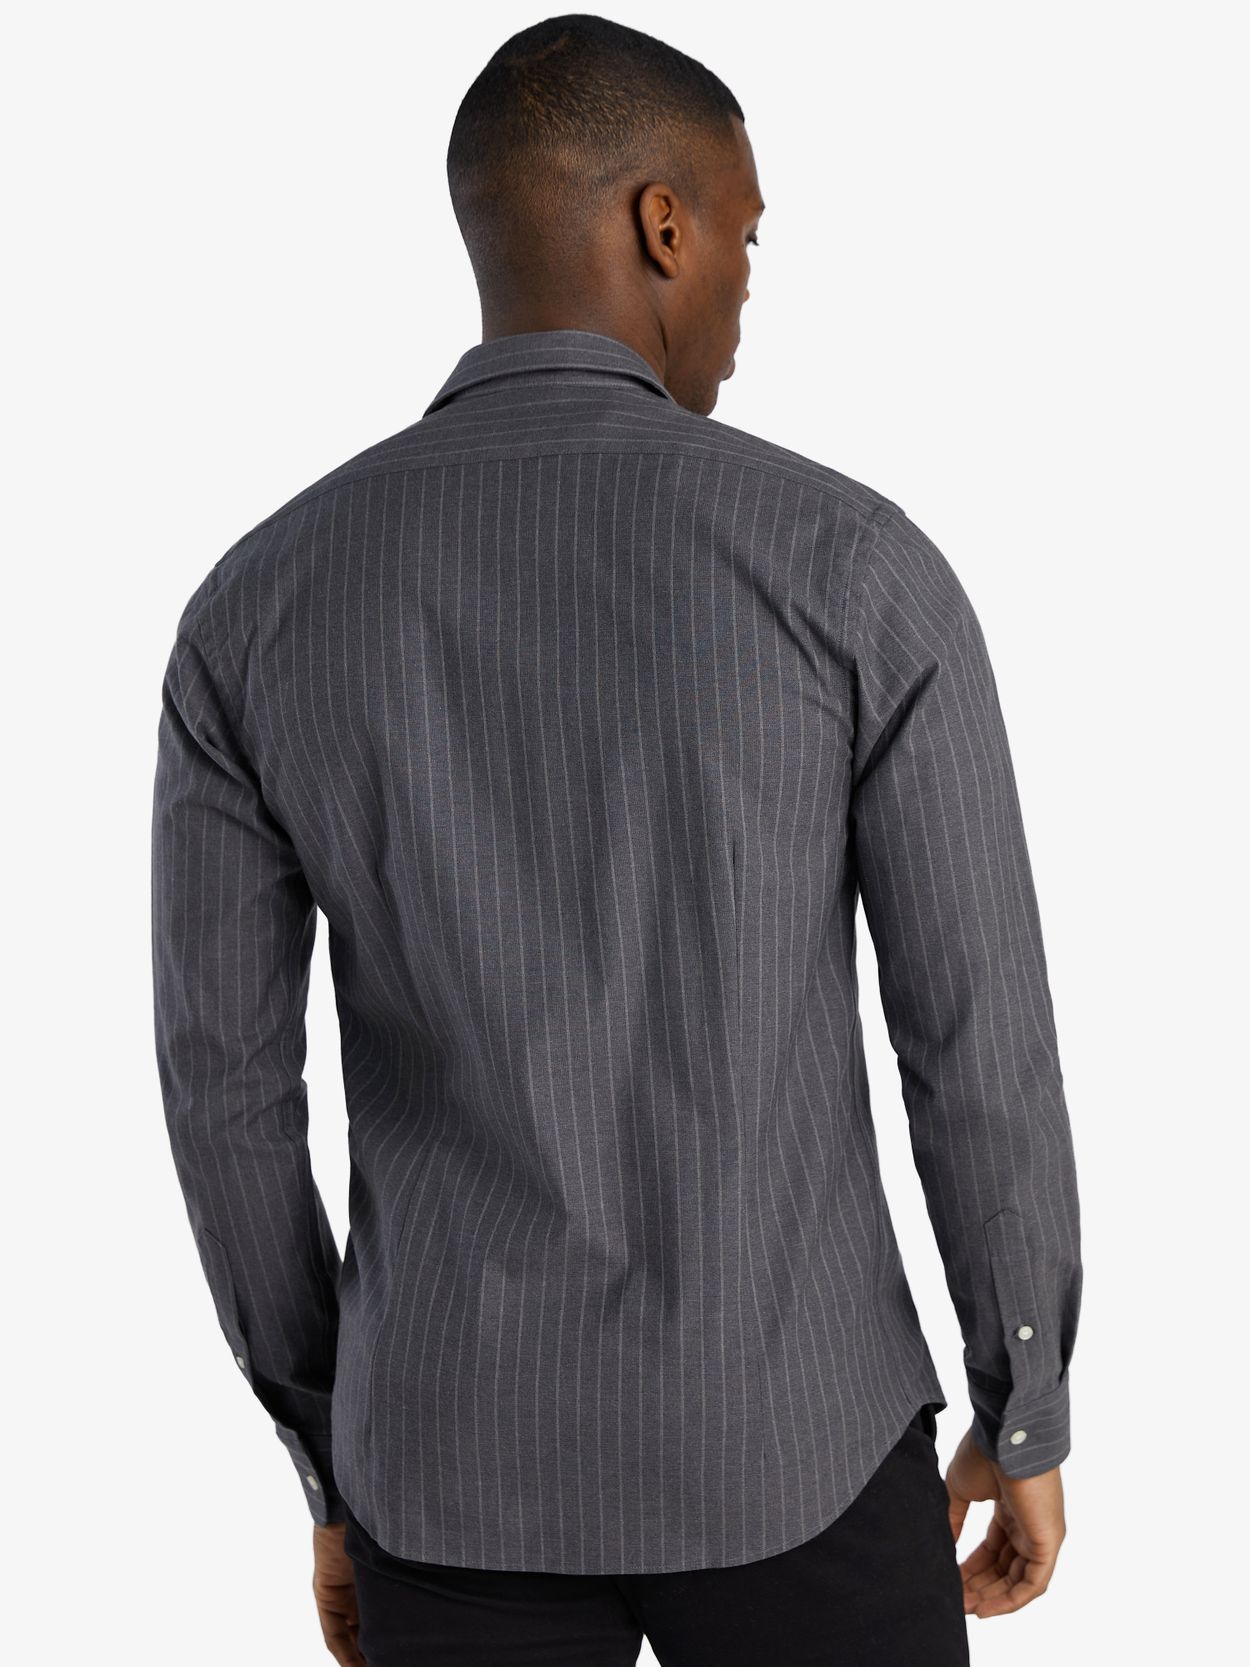 Grey Striped Zipper Shirt